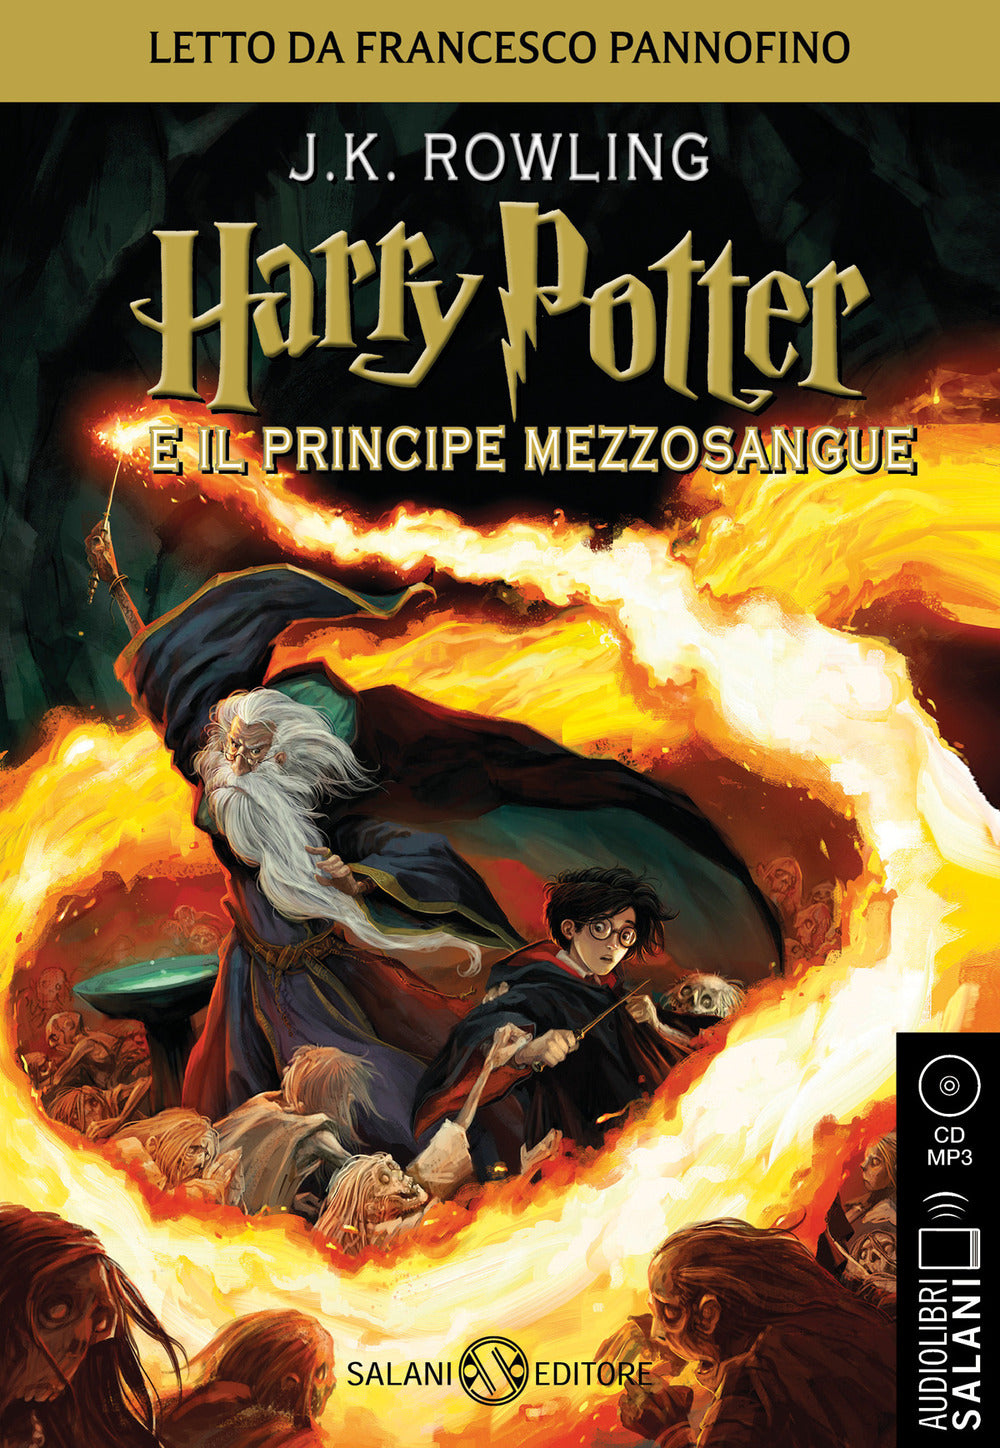 Harry Potter e il Principe Mezzosangue letto da Francesco Pannofino. Audiolibro. CD Audio formato MP3.